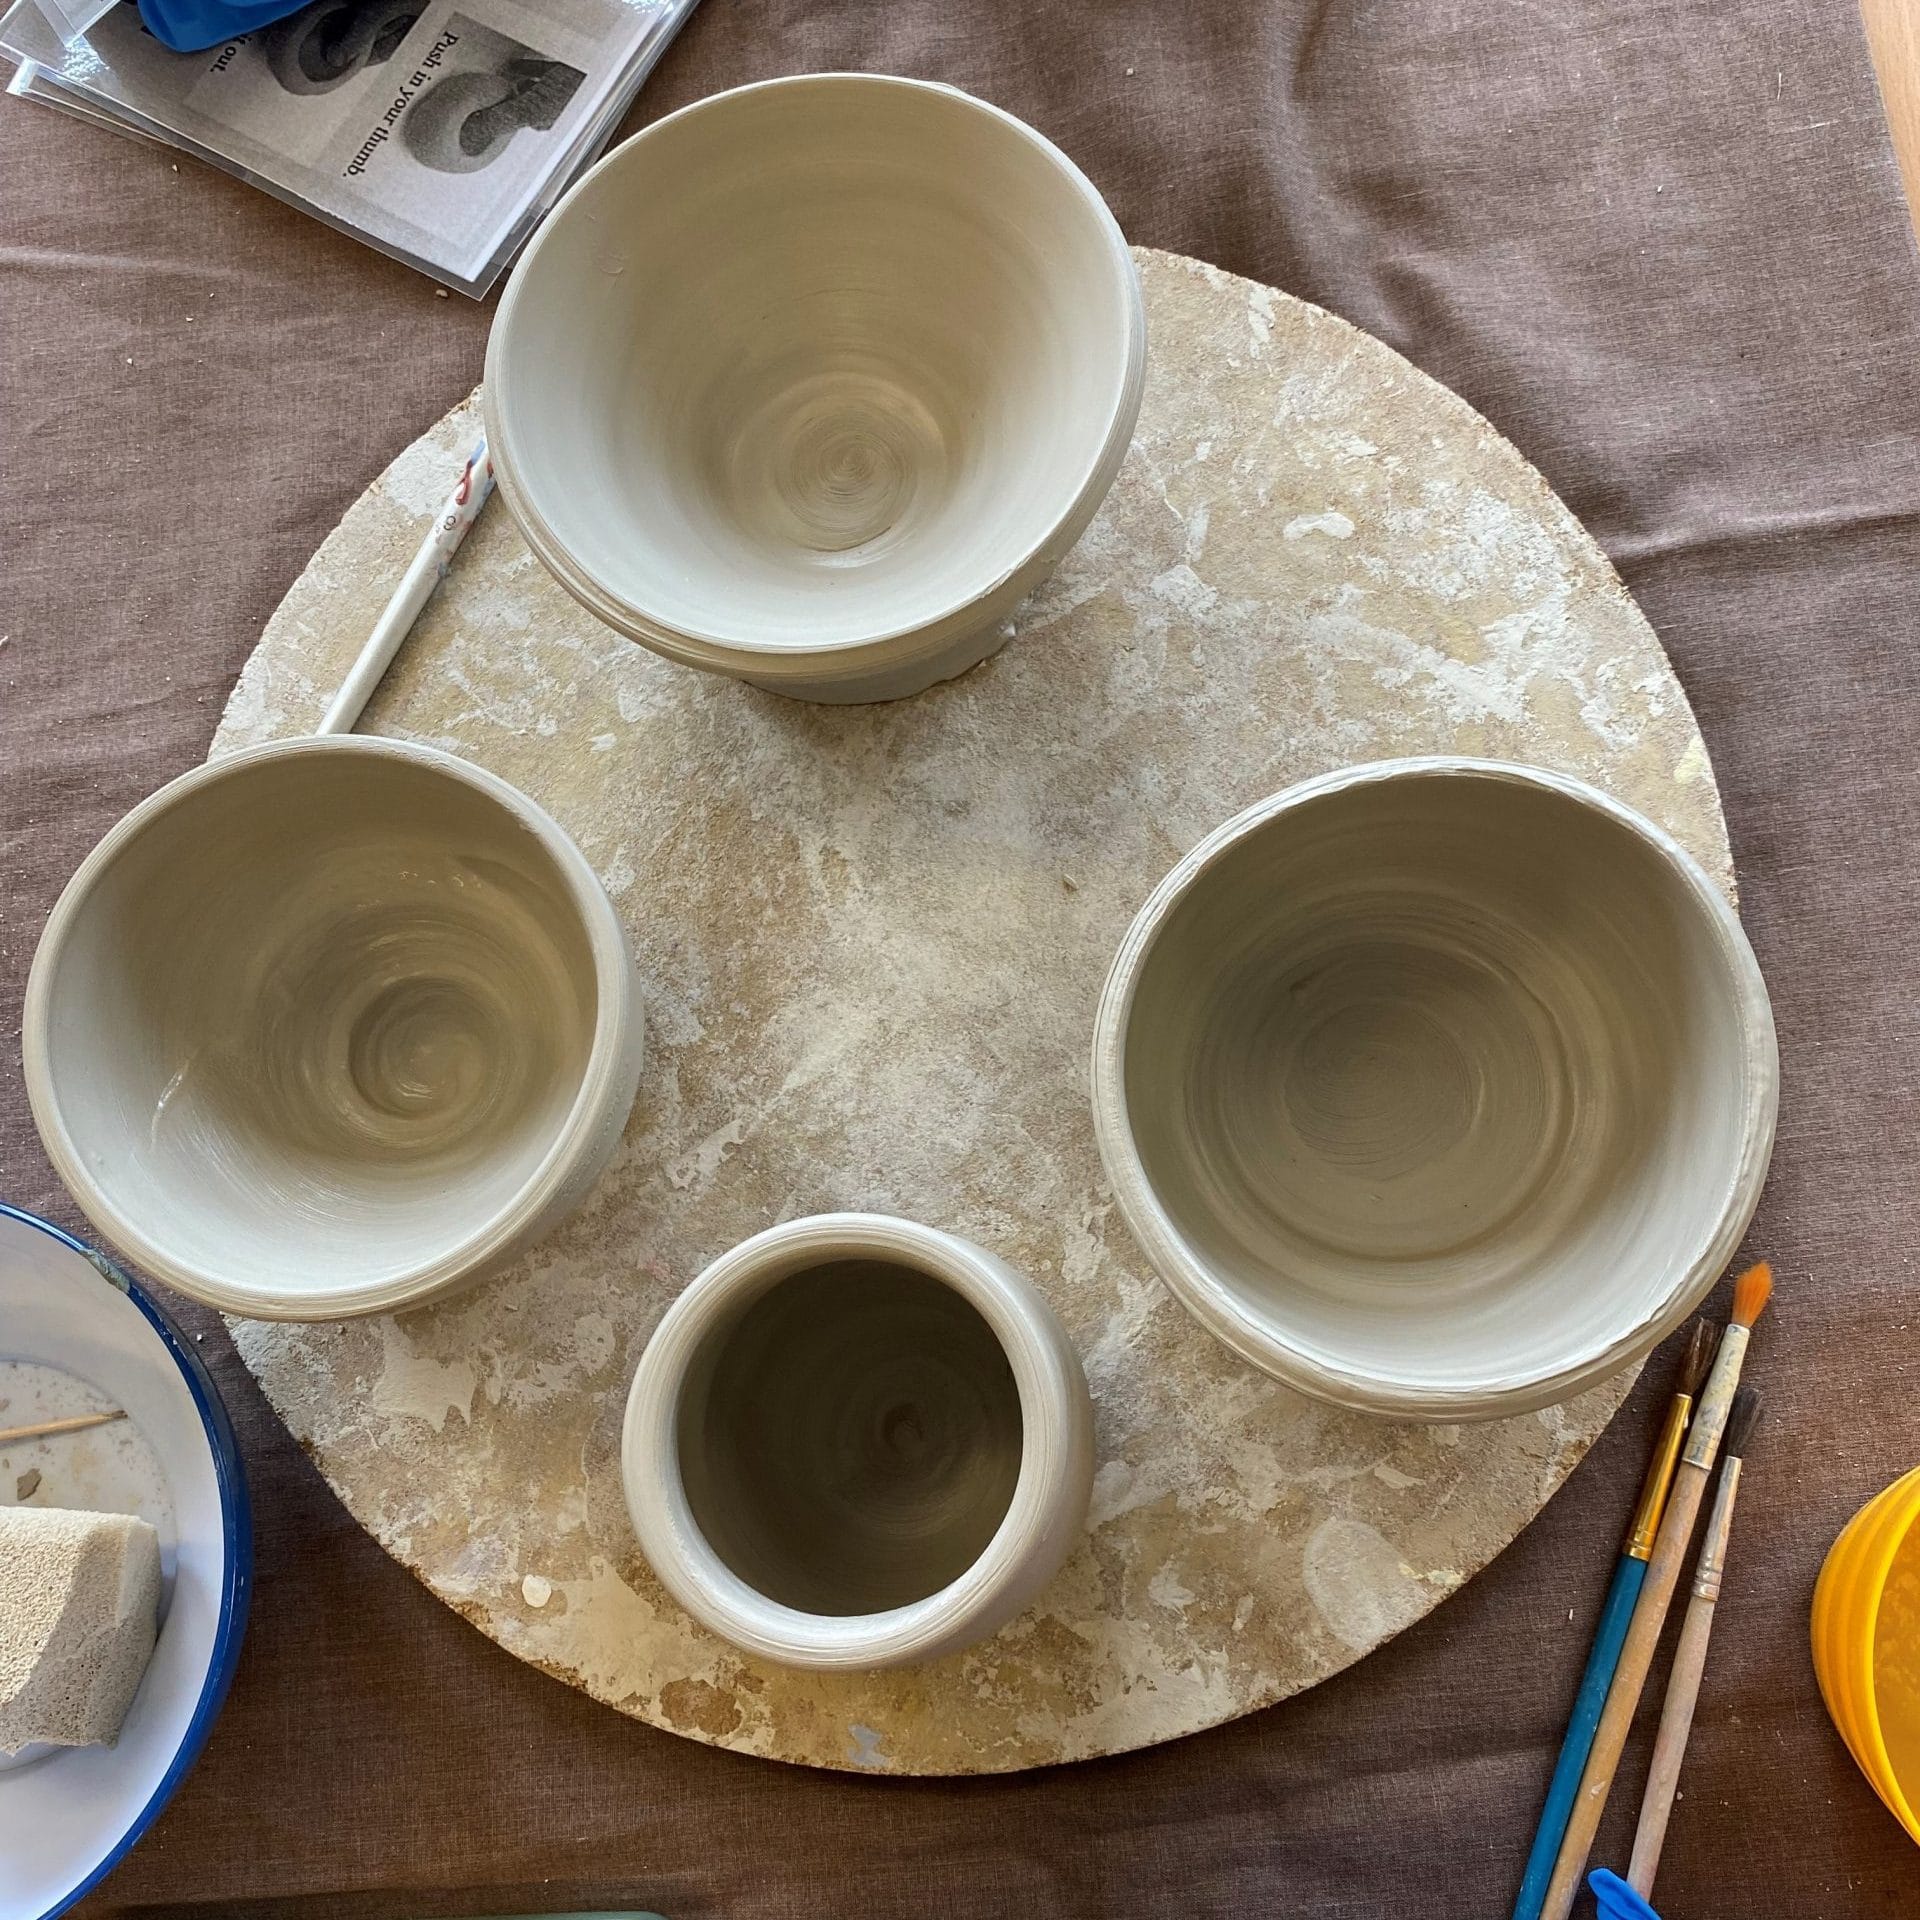 Clay bowls